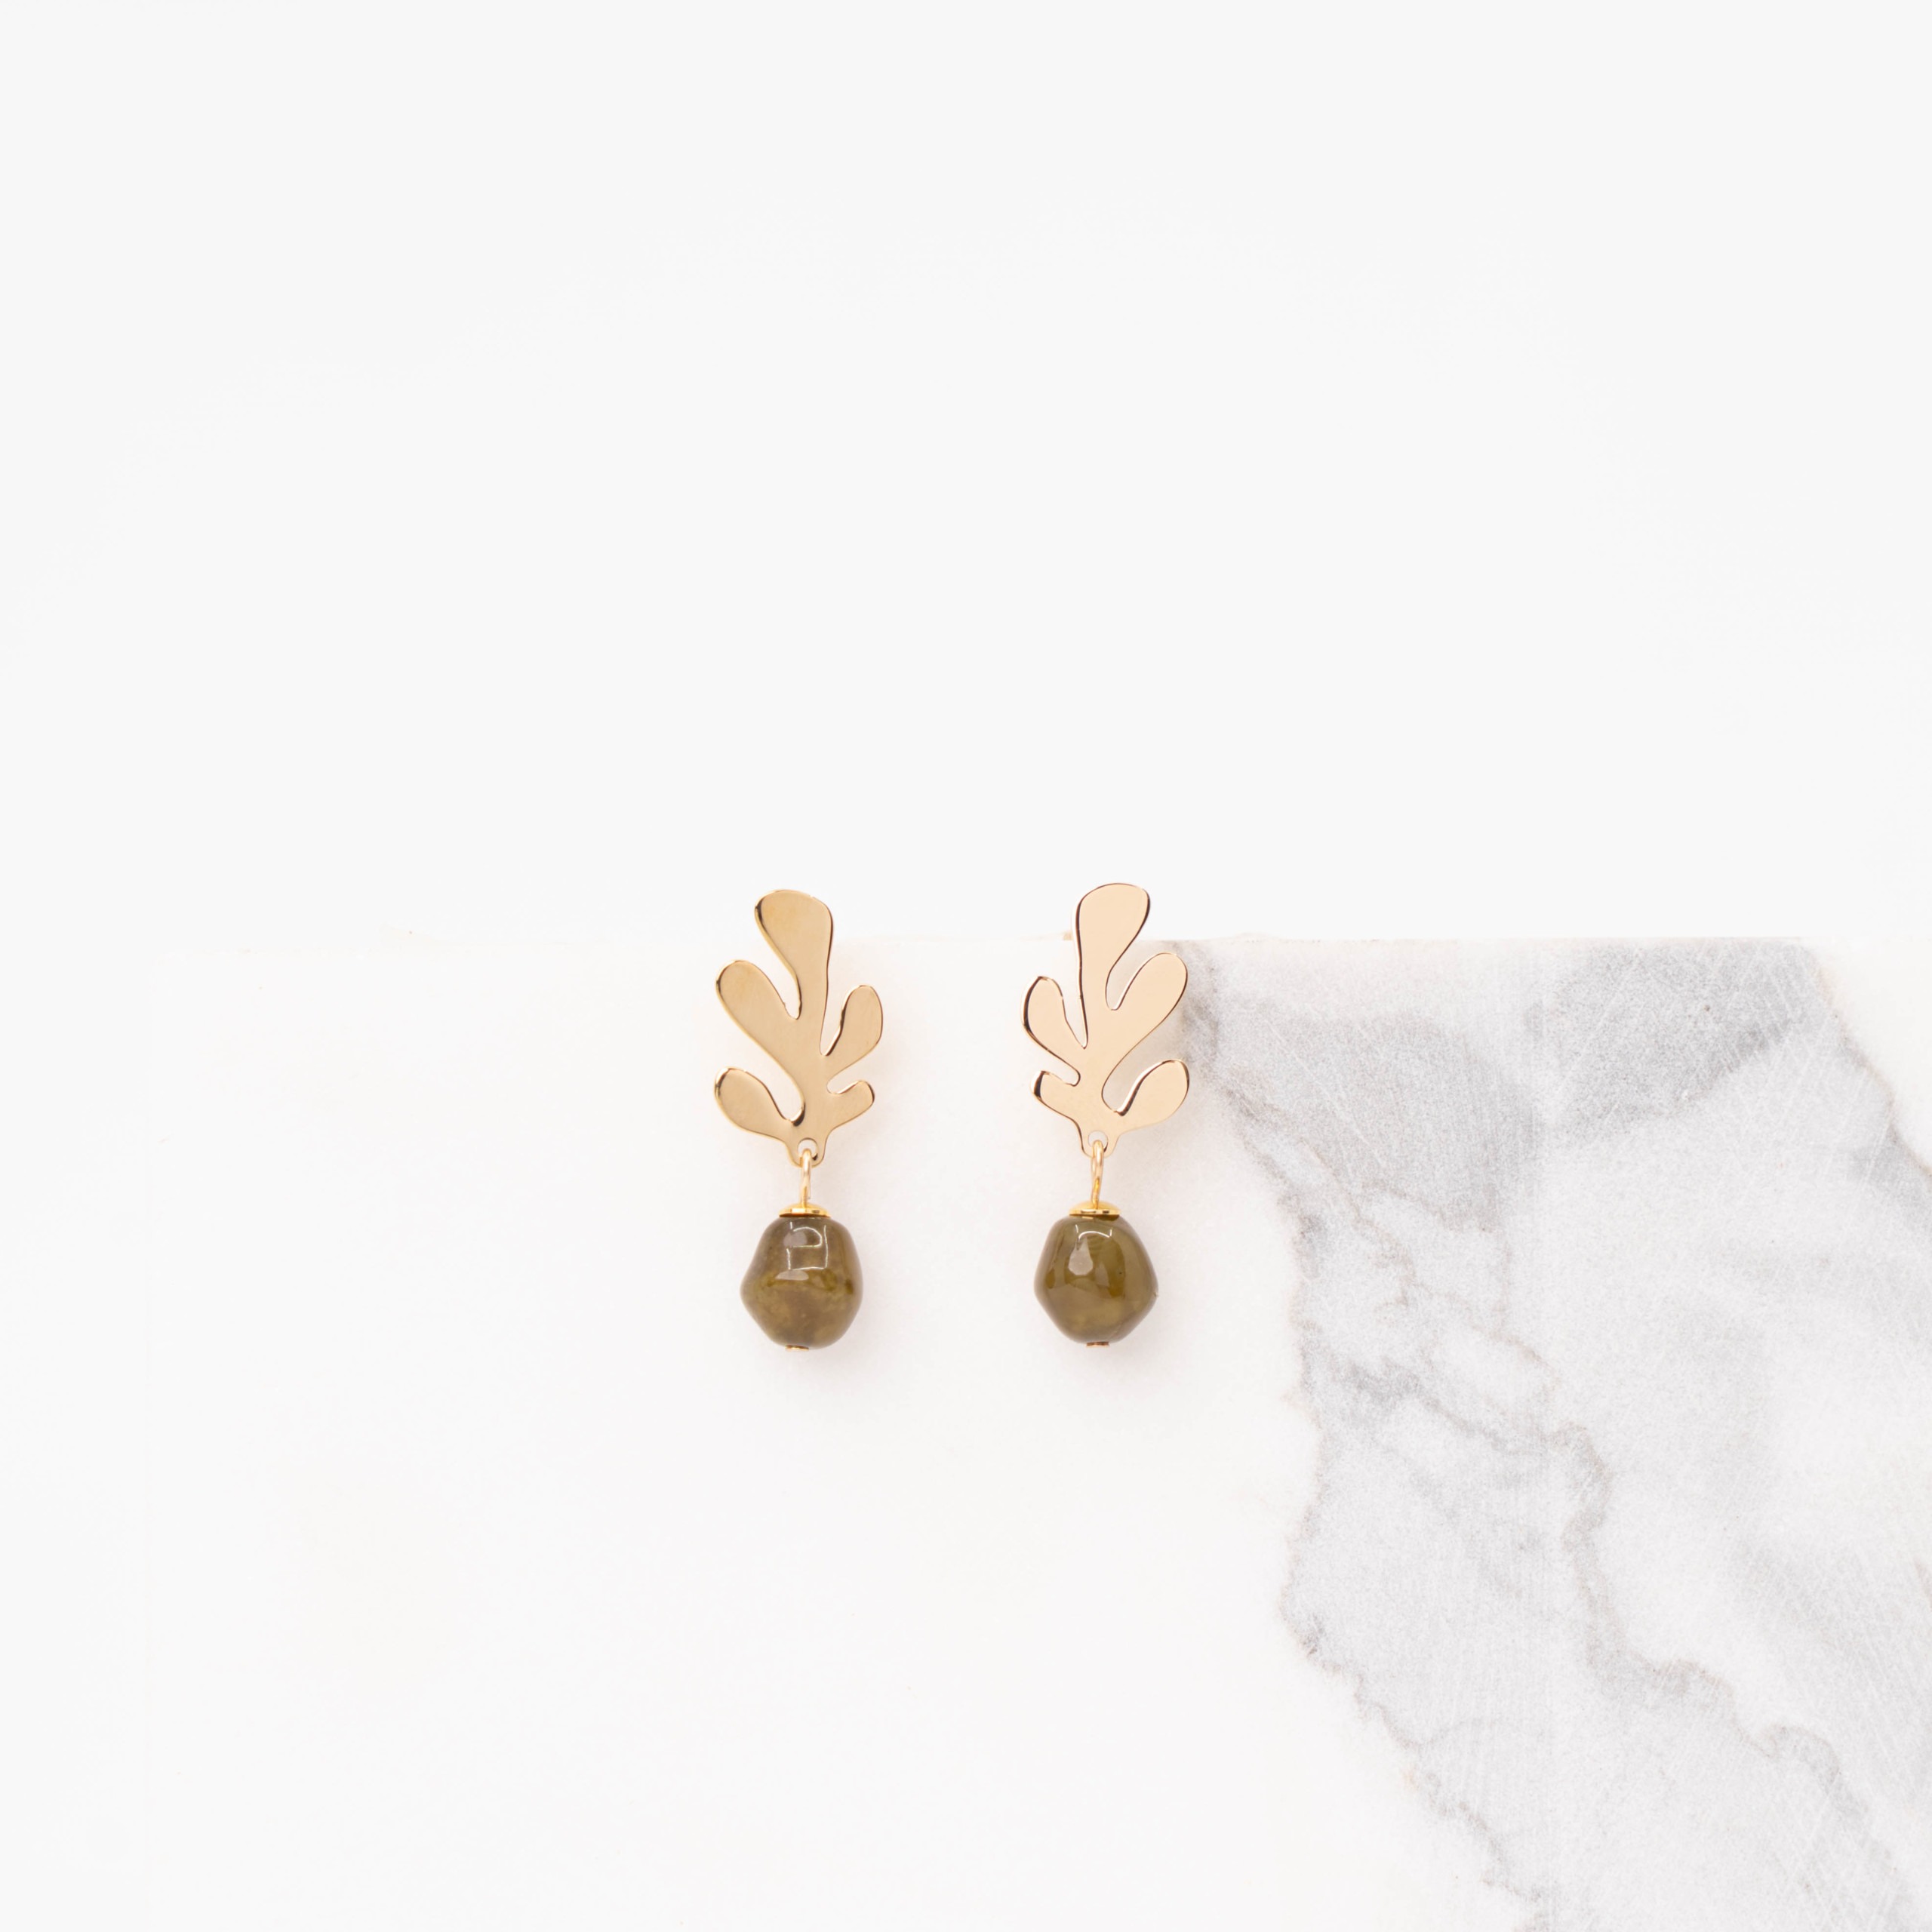 Coral mini green earrings